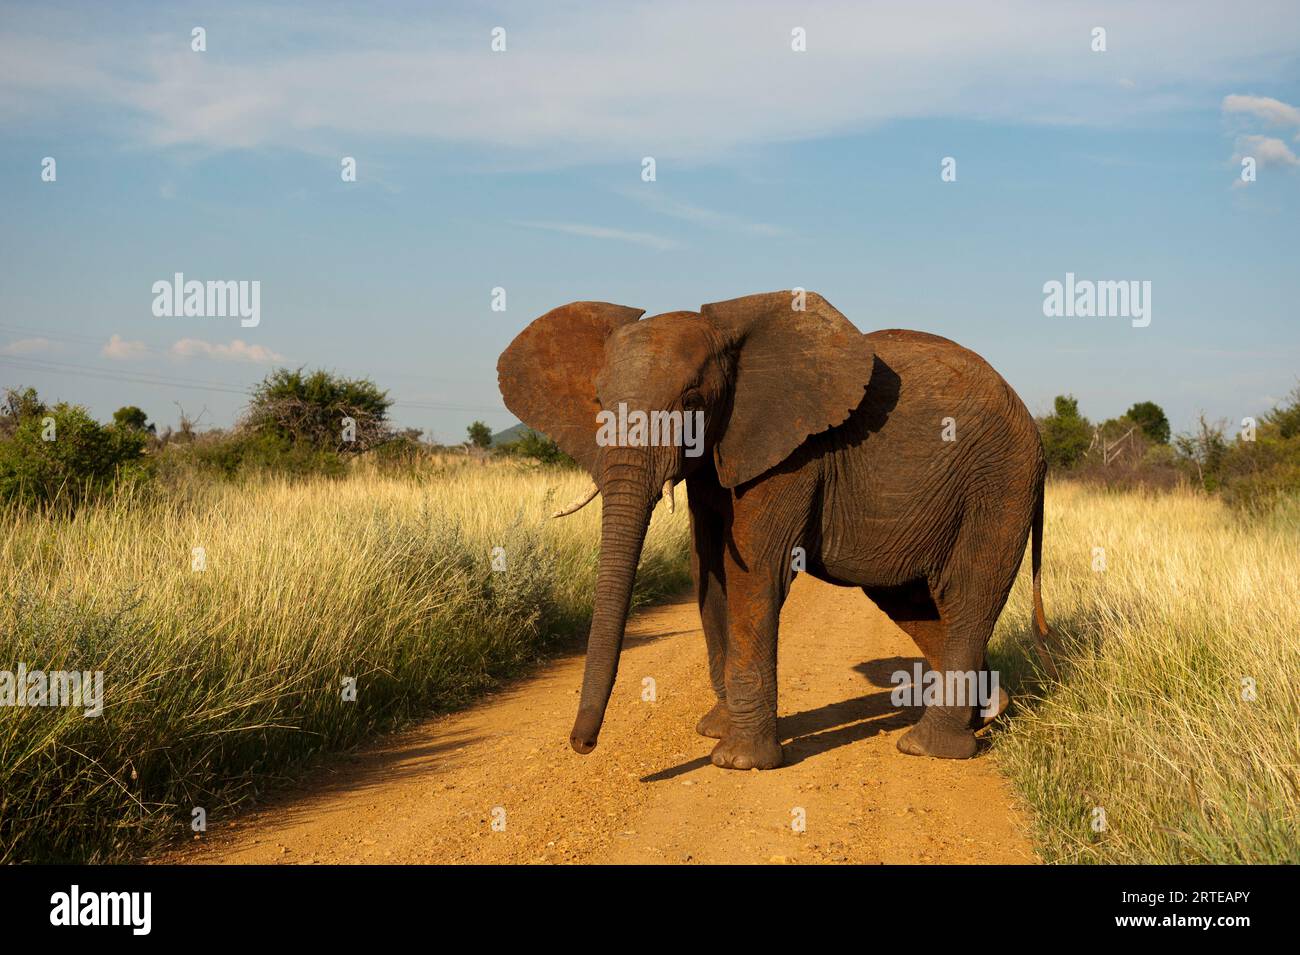 L’éléphant africain vulnérable (Loxodonta africana) se tient seul sur un chemin de terre dans la réserve animalière de Madikwe, en Afrique du Sud Banque D'Images